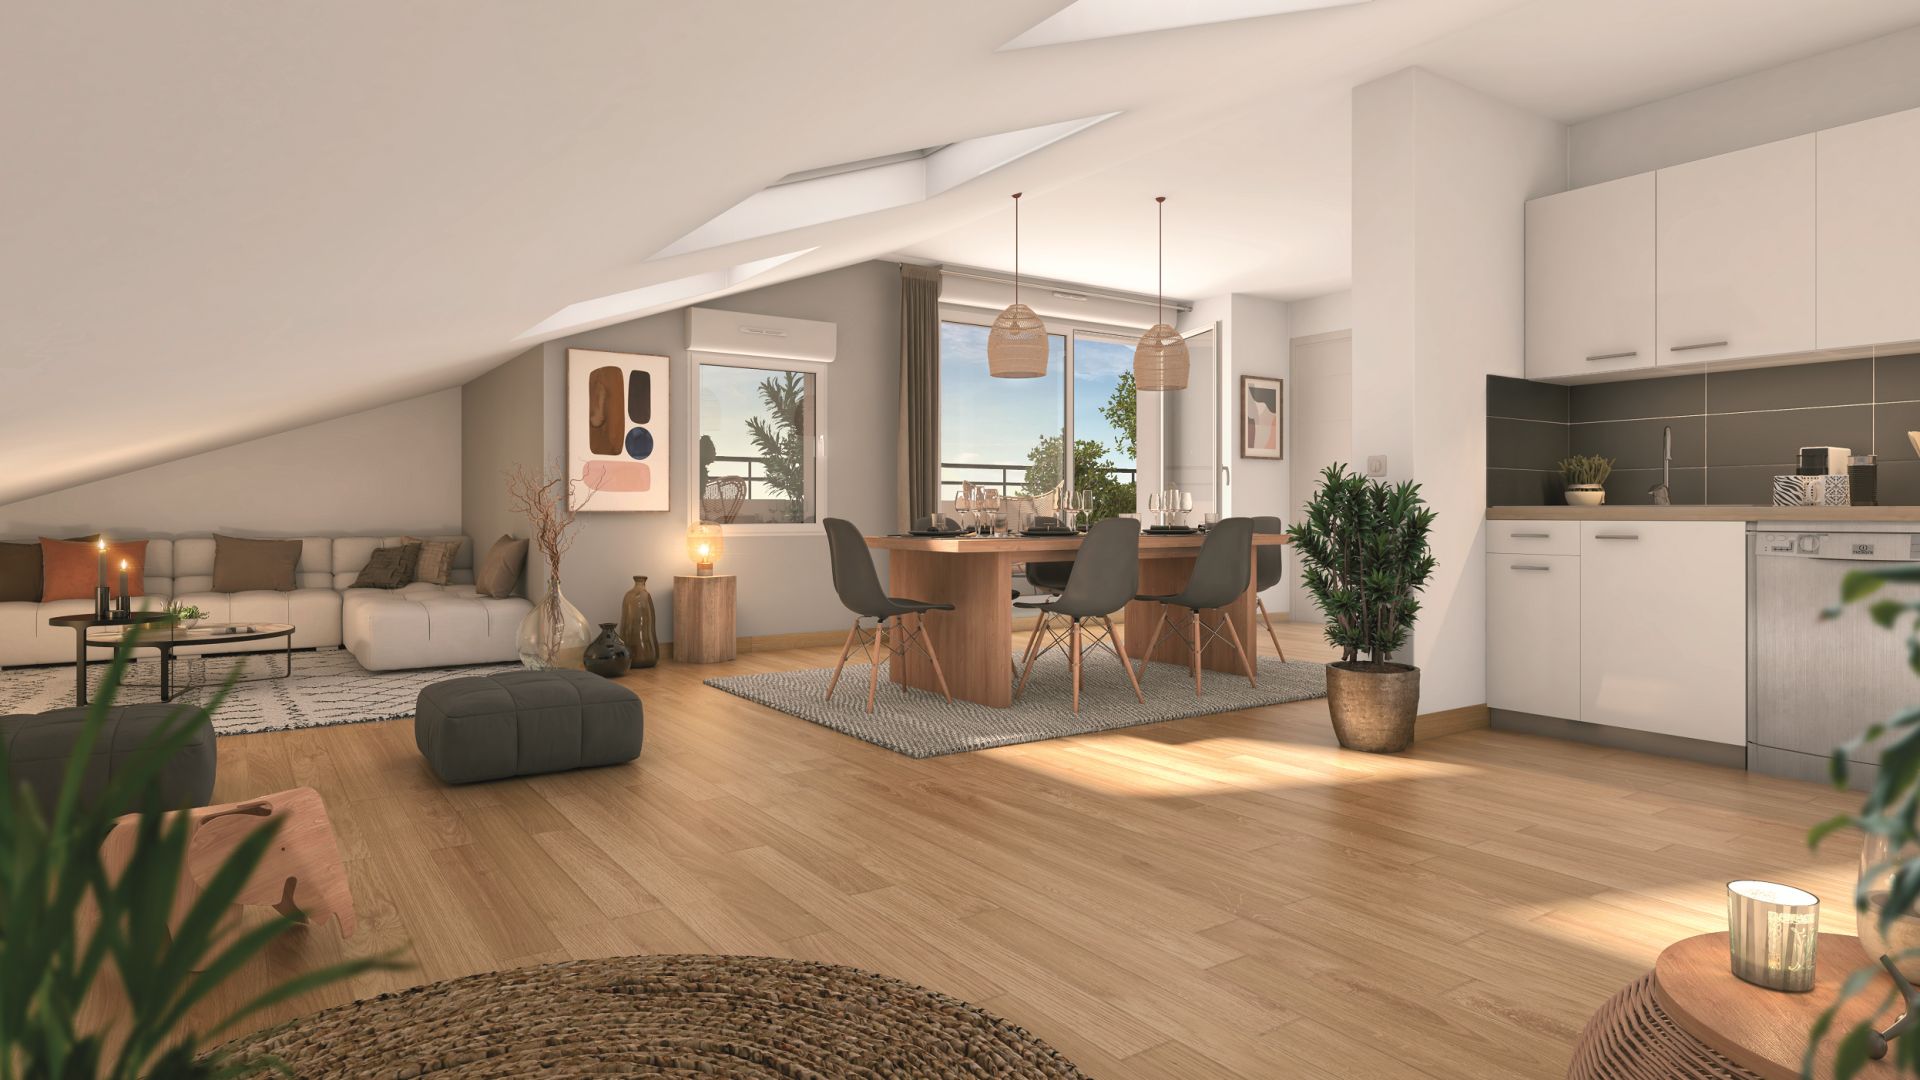 Greencity immobilier - achat appartements neufs du T2 au T3 - Résidence Villa Angelo - 31600 Eaunes - vue intérieure